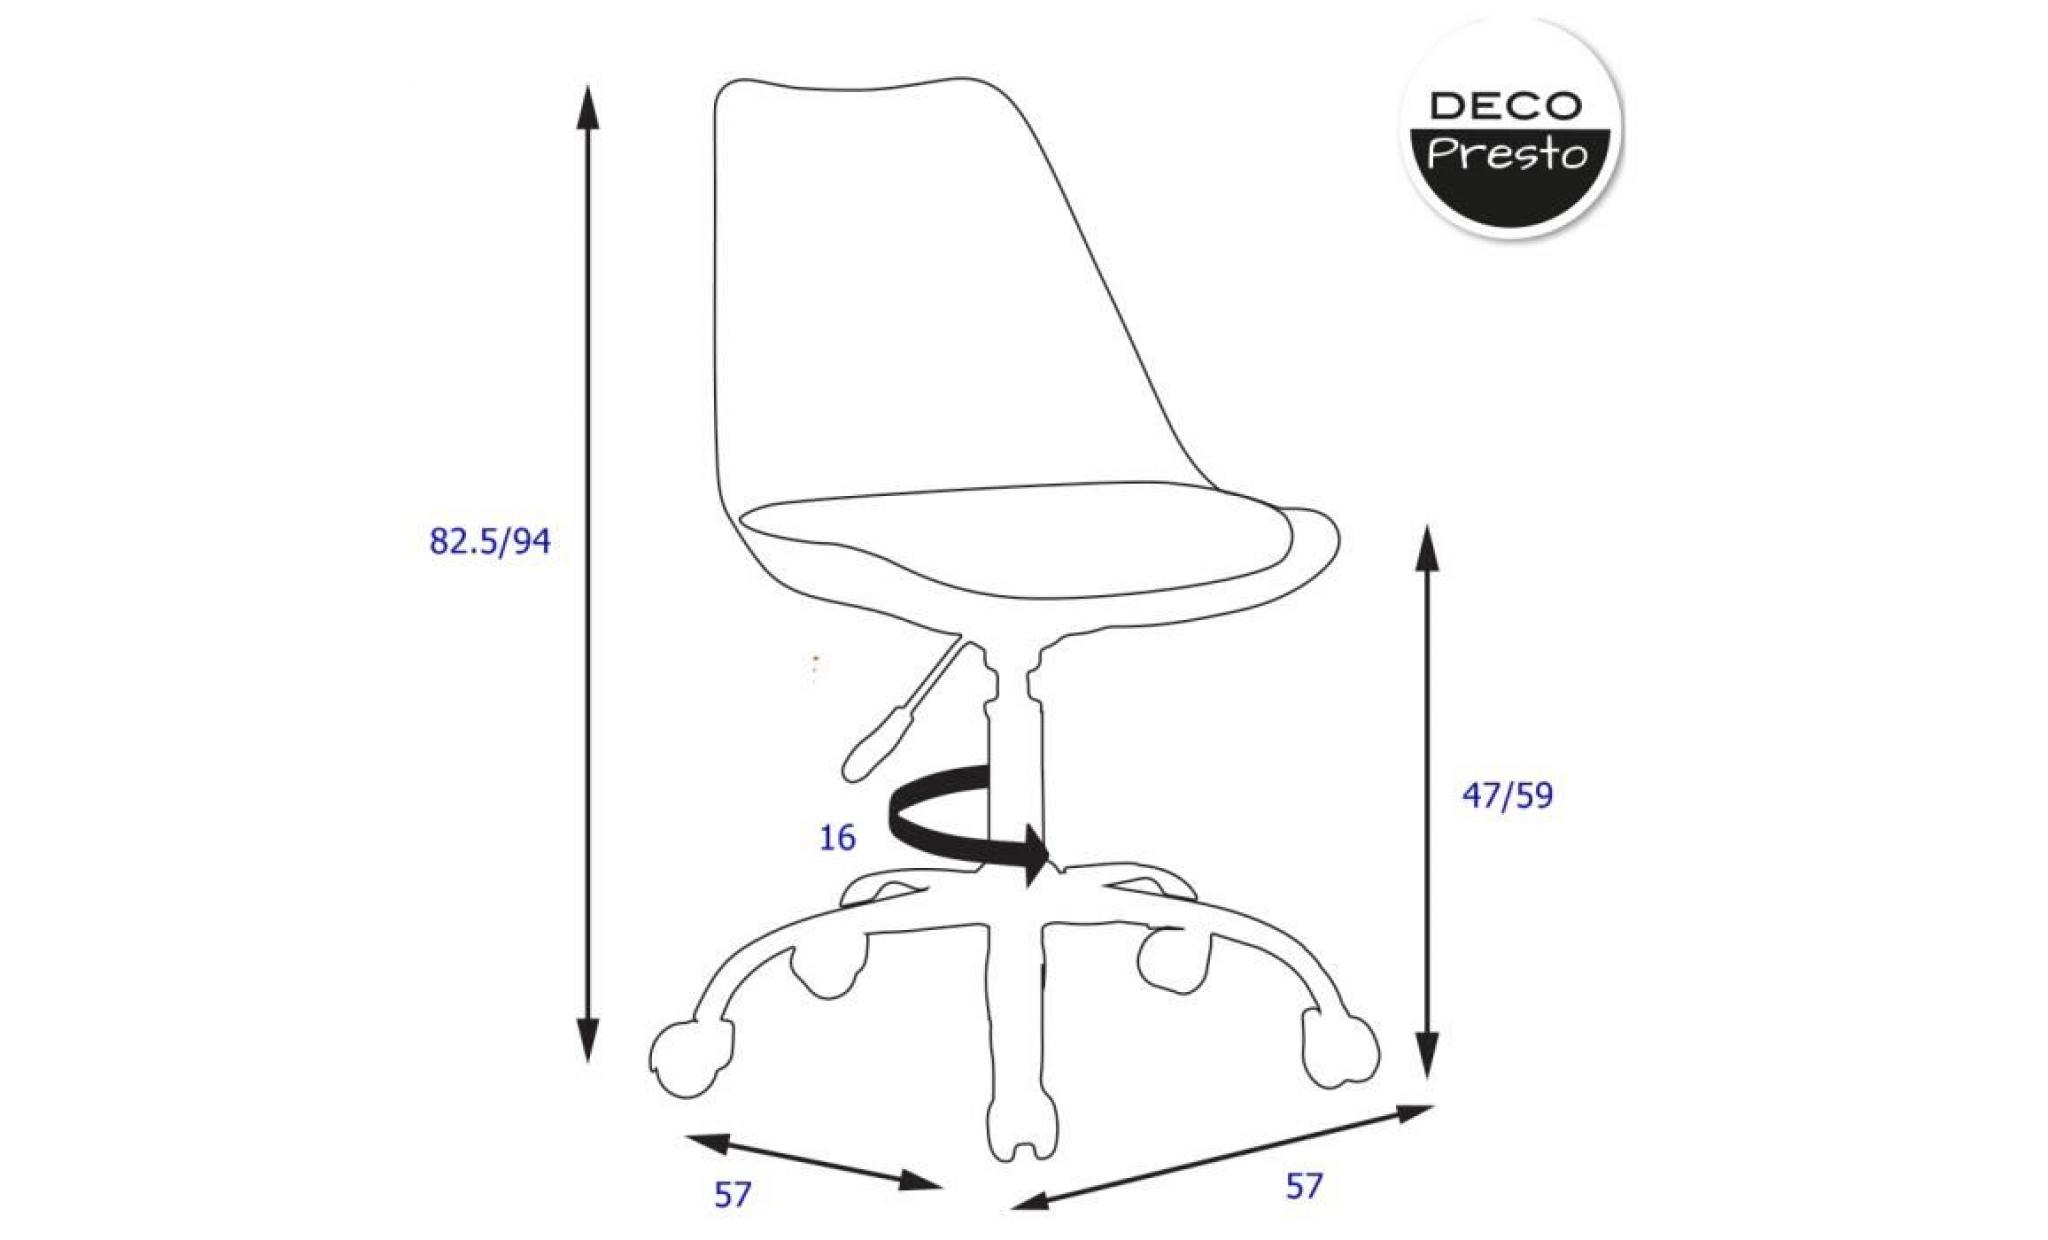 1 x chaise de bureau roulettes hauteur réglable   patchwork jeans pieds   chrome  decopresto dp dsoa pj 1p pas cher